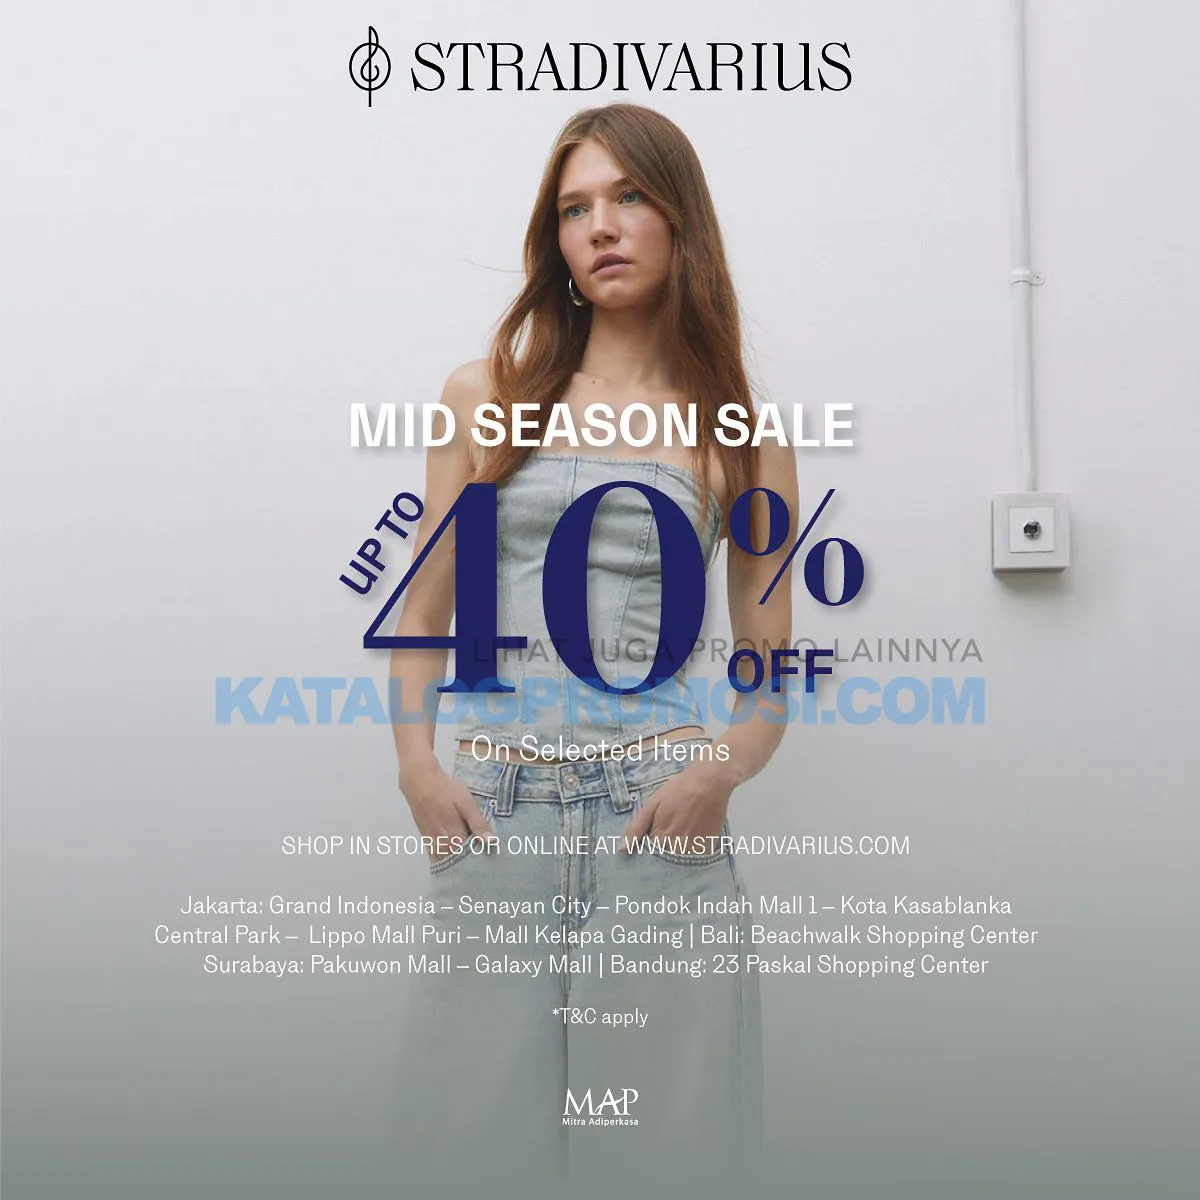 Promo Stradivarius MID SEASON SALE - Get 40% Off On Selected Items